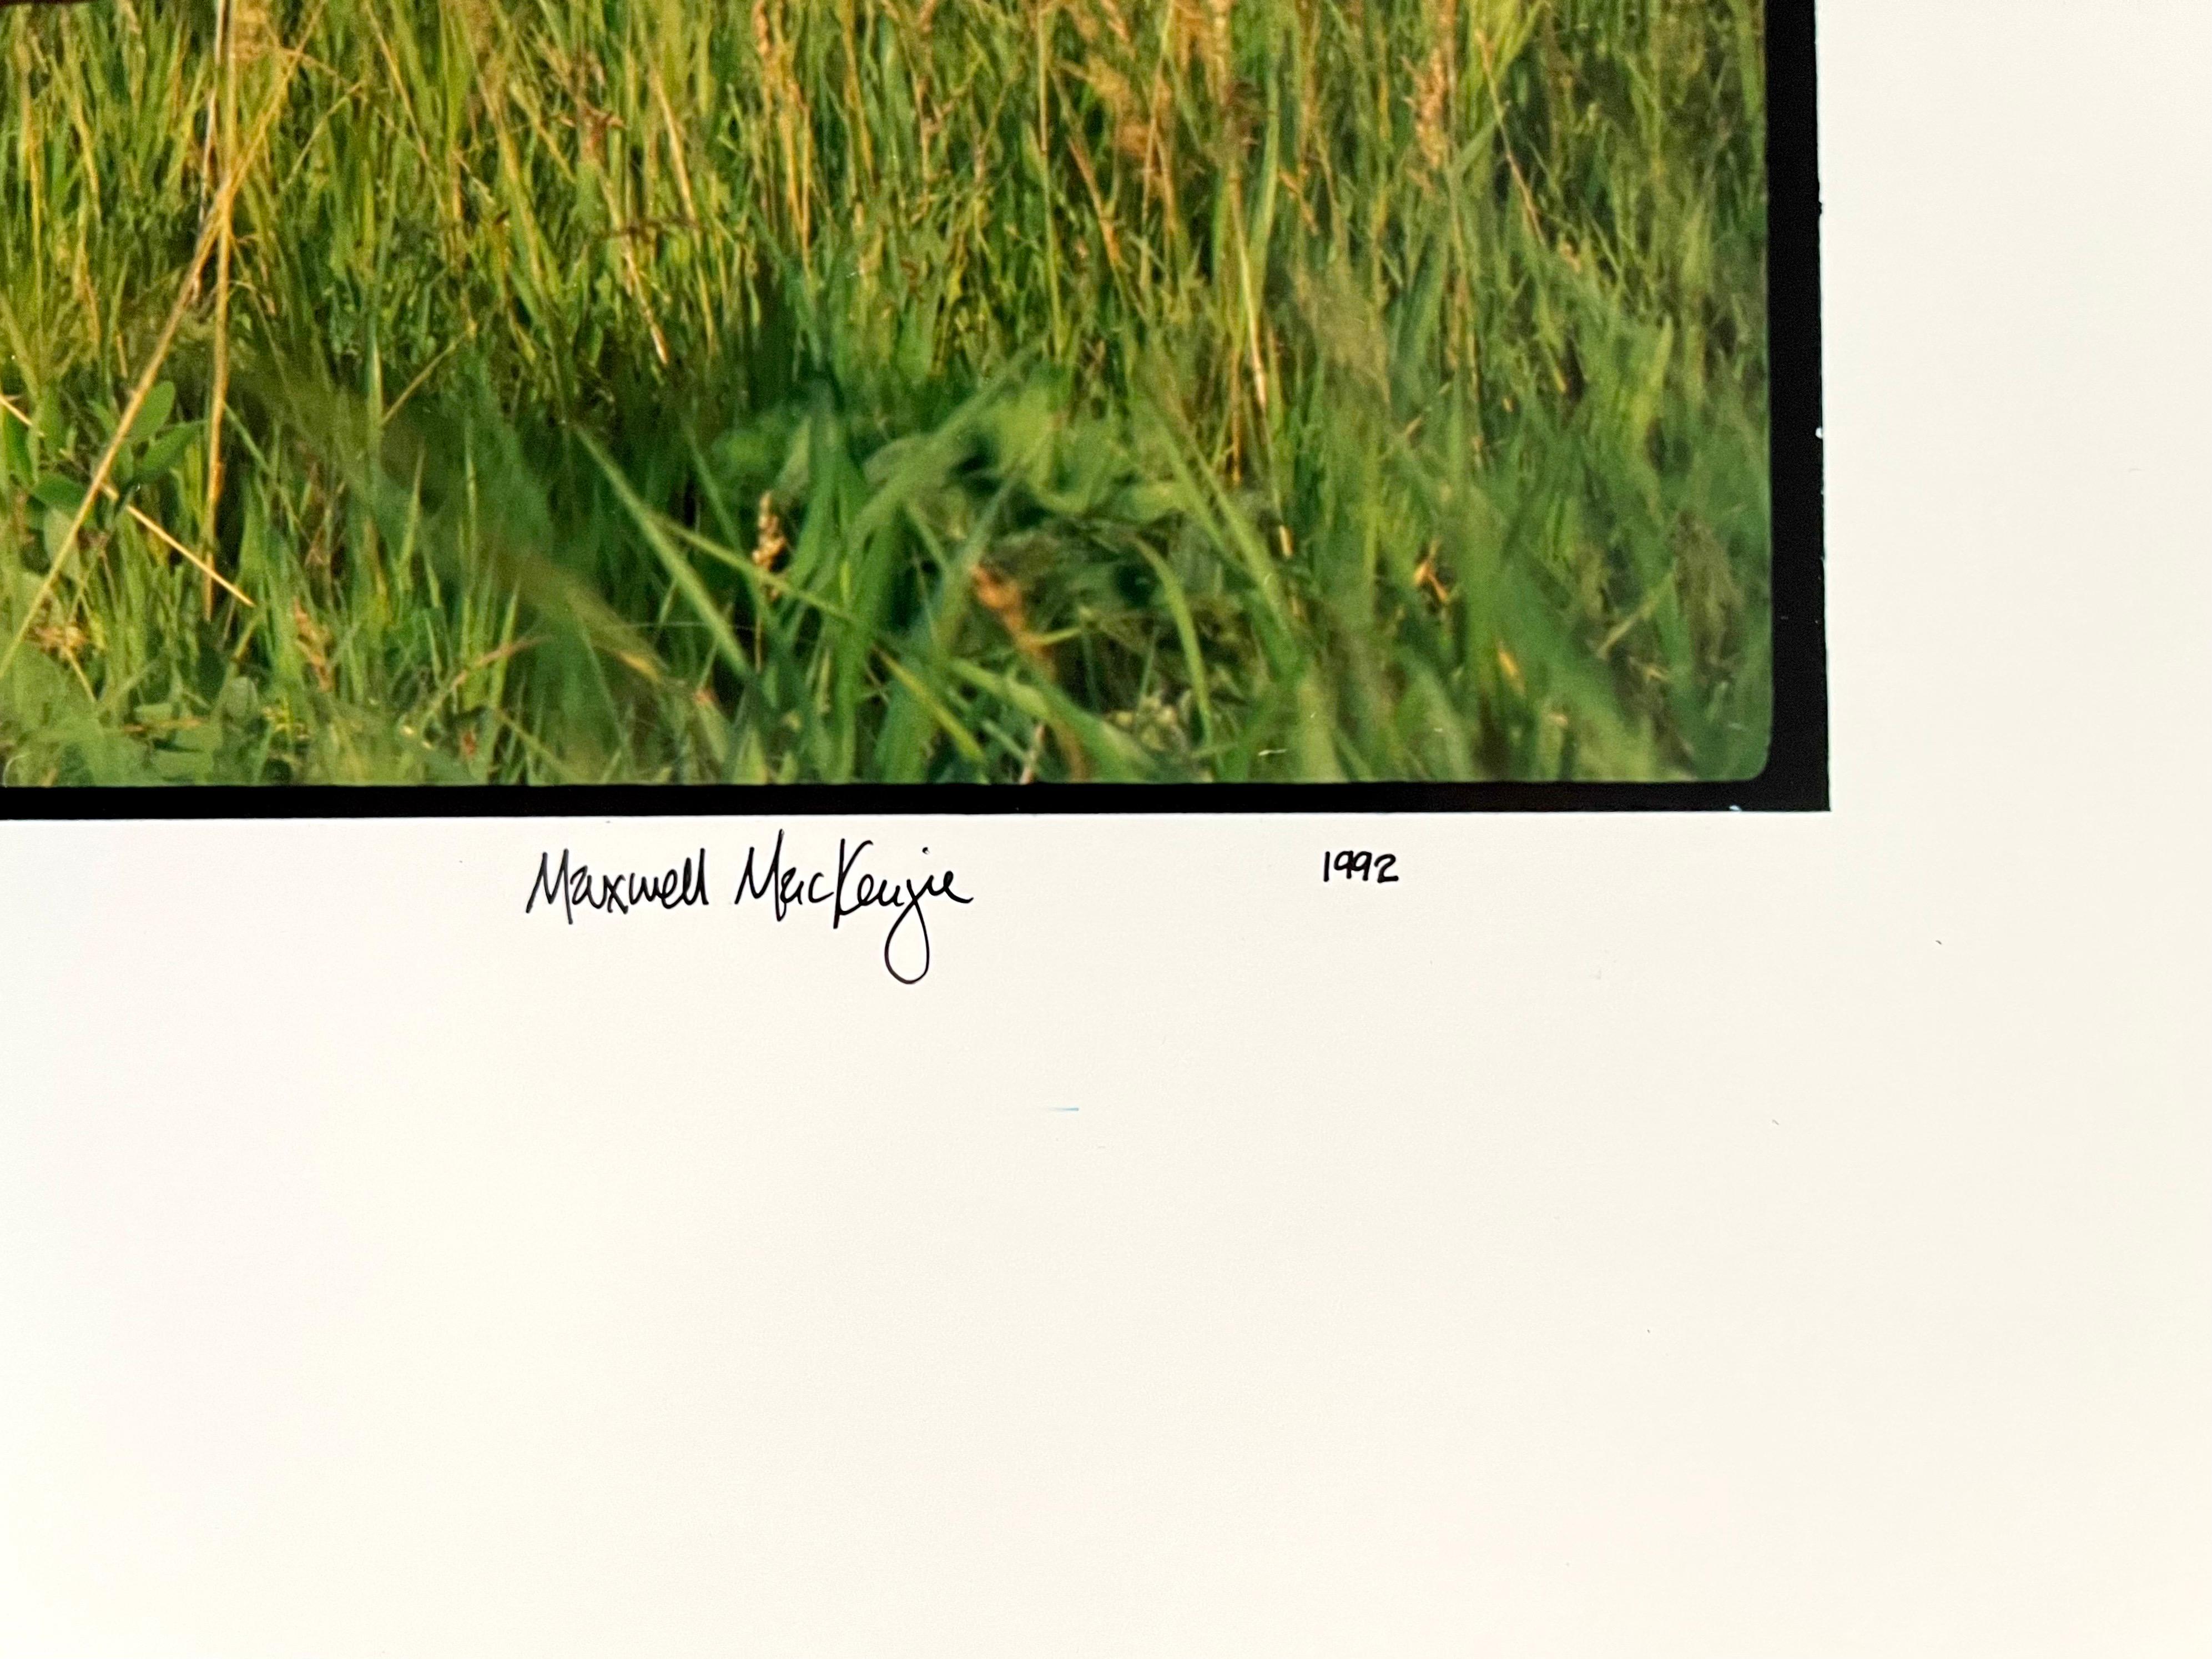 Écolier, paysage d'été, grande photographie couleur vintage en panneau, signée - Photograph de Maxwell Mackenzie